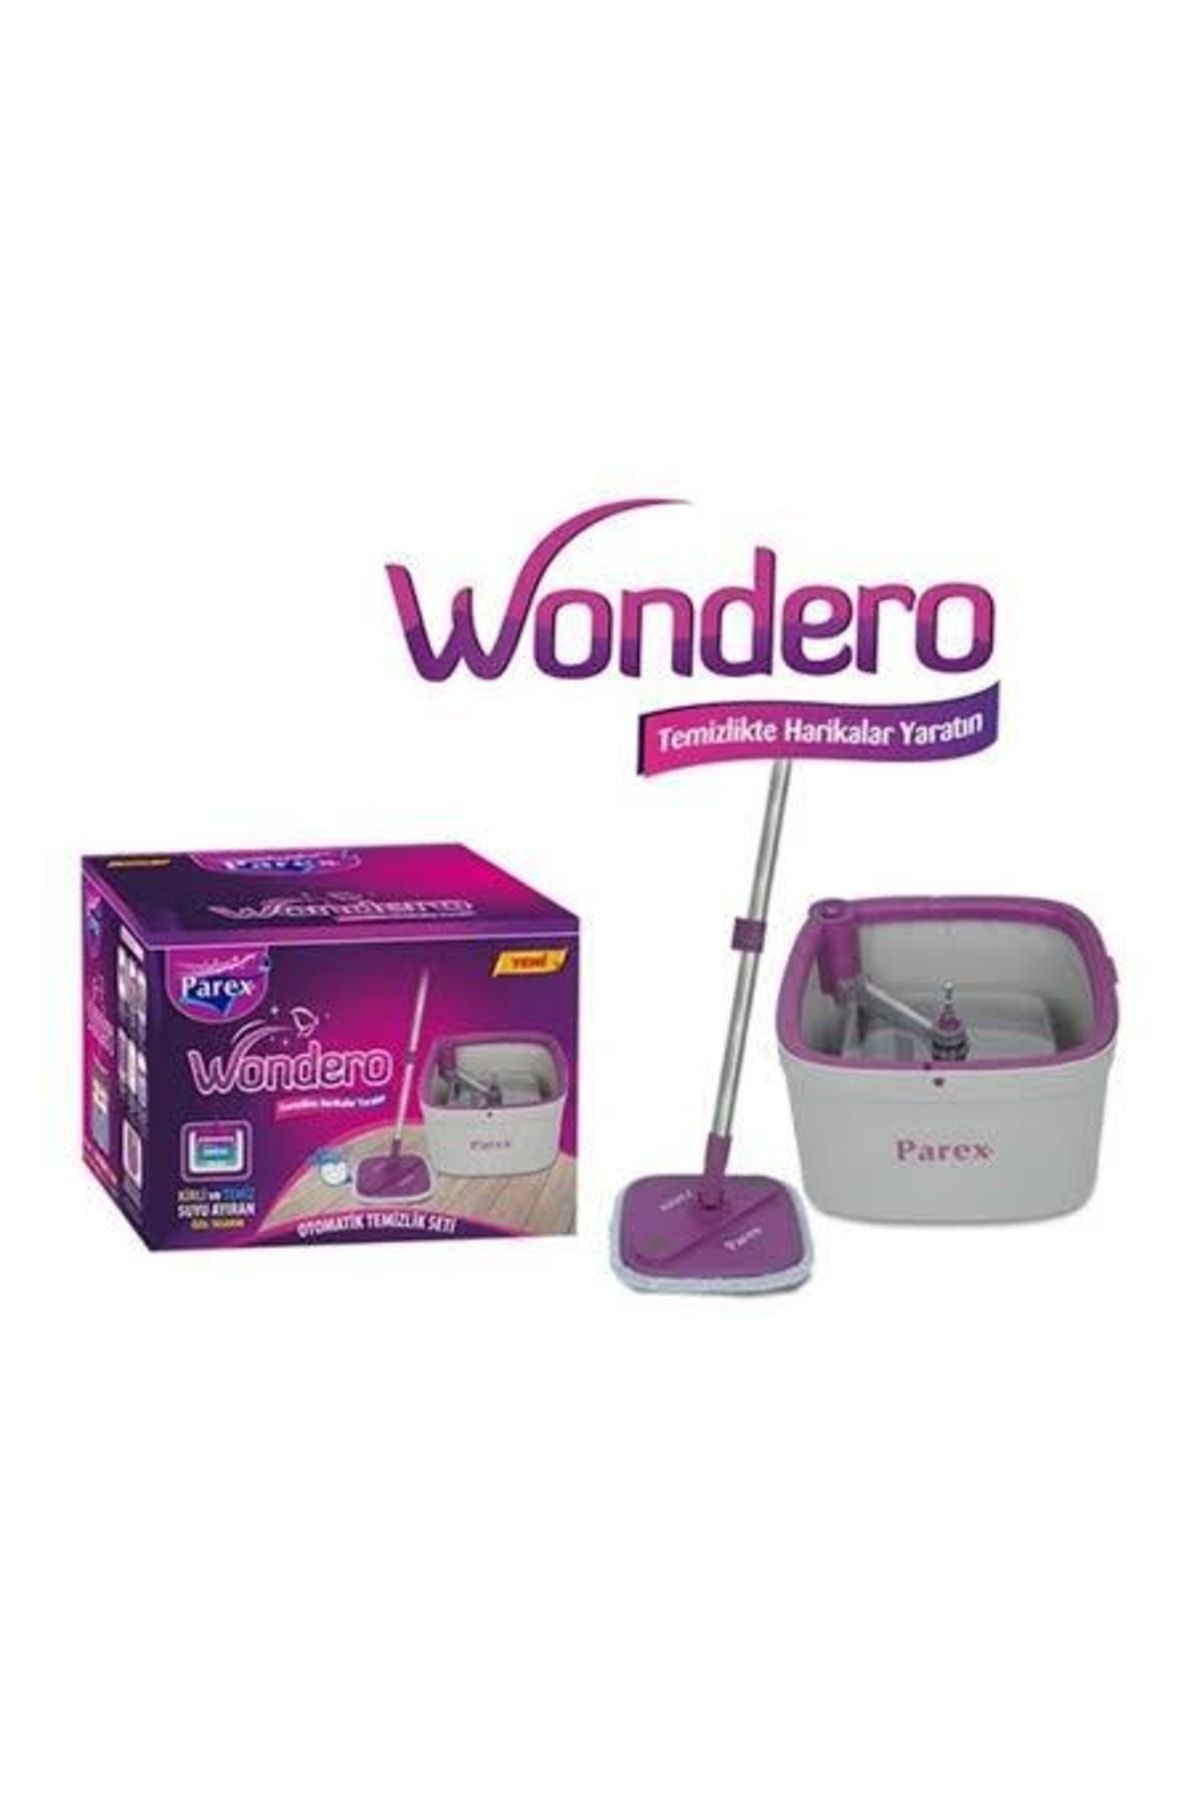 Parex Wondero Otomatik Temizlik Seti - Temiz & Kirli Suyu Ayırma Özelliği